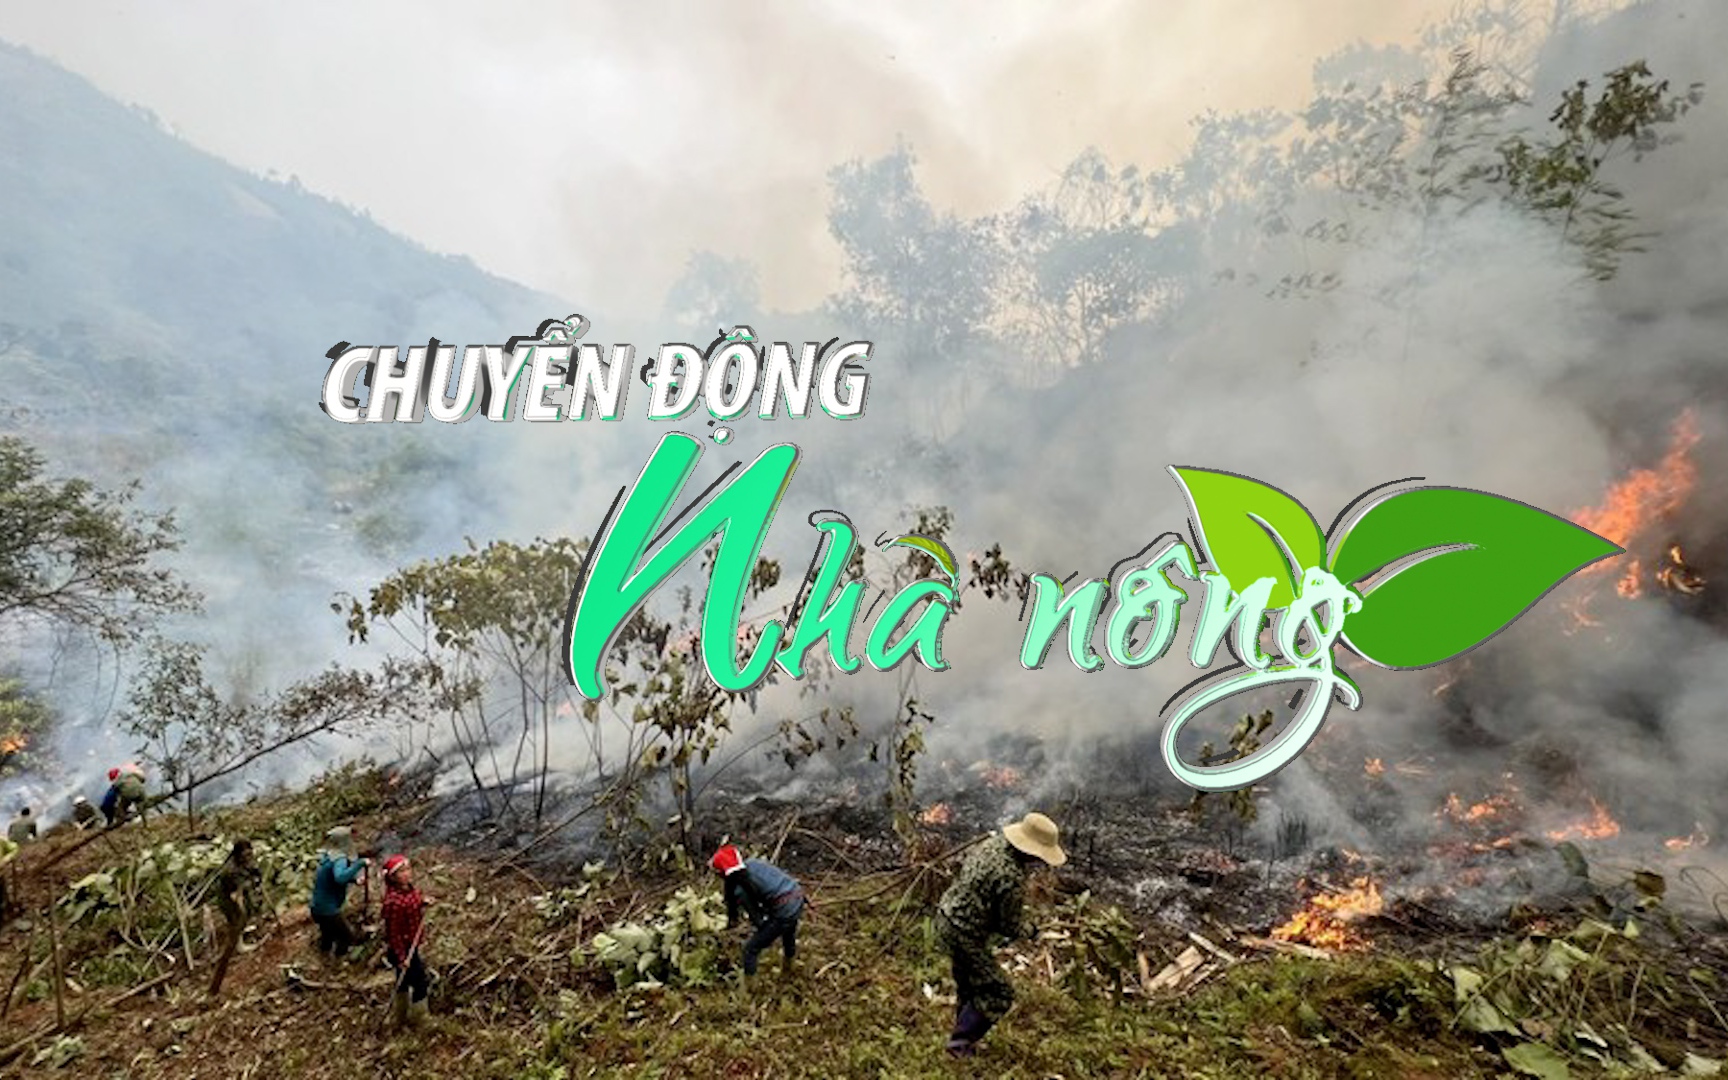 Chuyển động Nhà nông 6/3: Lào Cai nâng cấp độ phòng, chống cháy rừng 